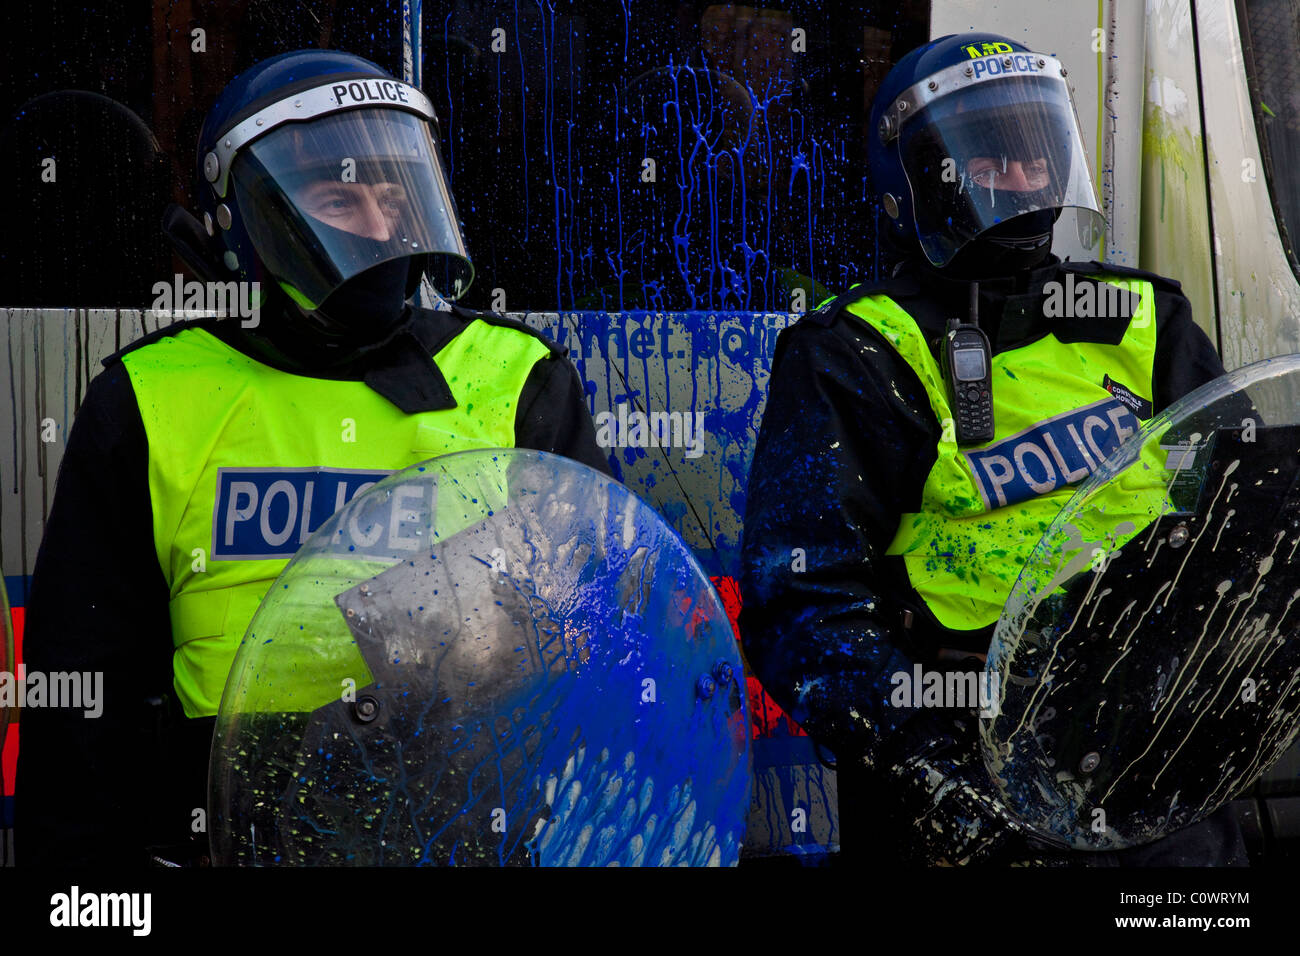 Police policiers britanniques des manifestations d'étudiants, la place du Parlement, Londres, Angleterre (décembre 2010) Banque D'Images